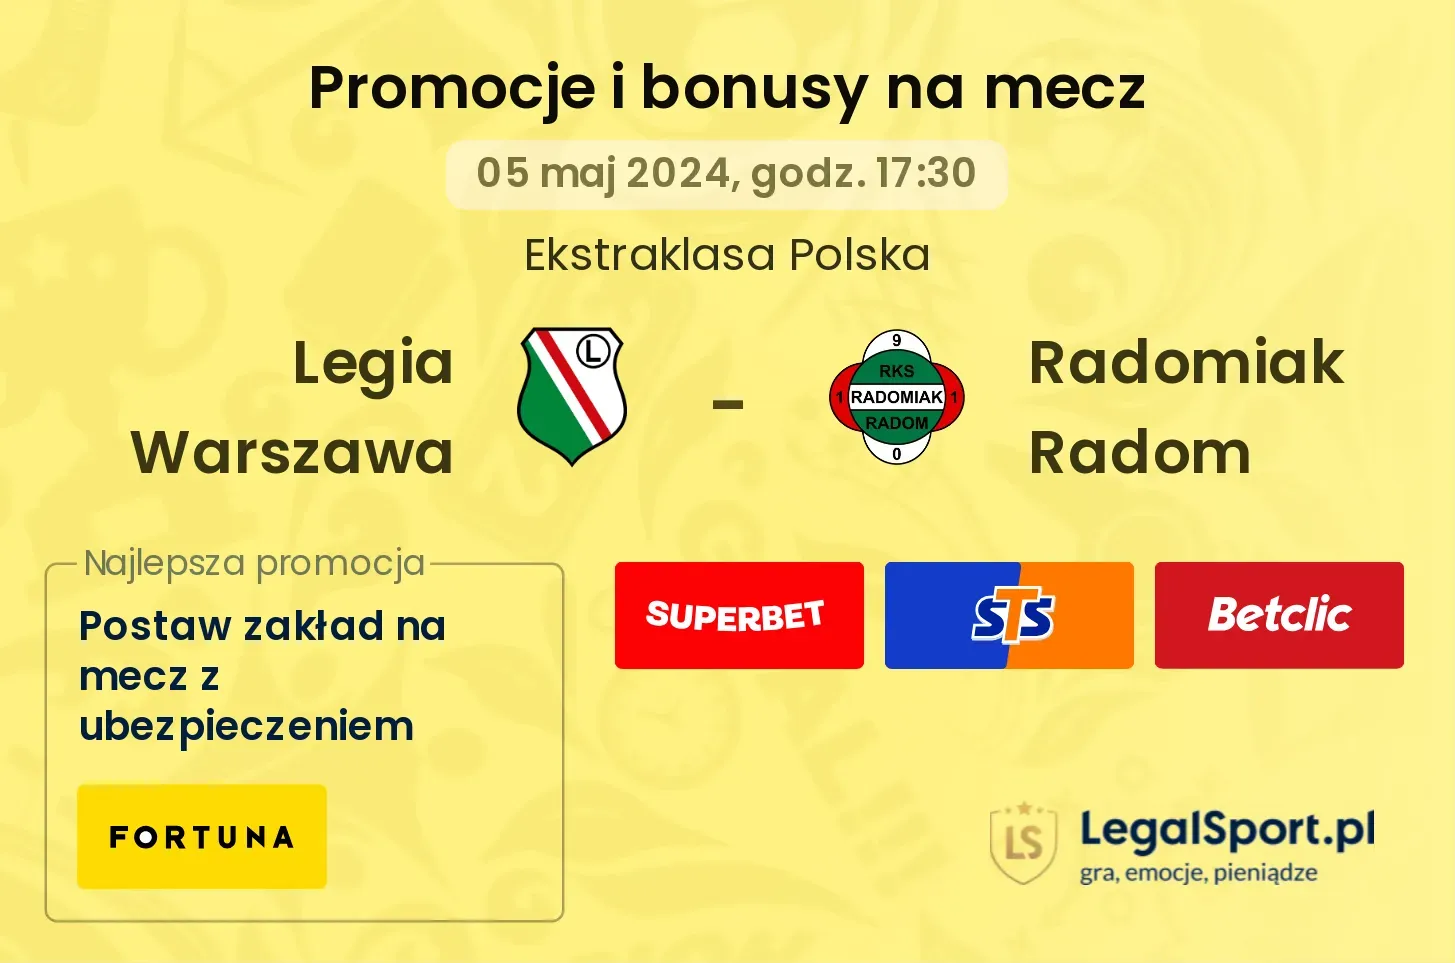 Legia Warszawa - Radomiak Radom promocje bonusy na mecz